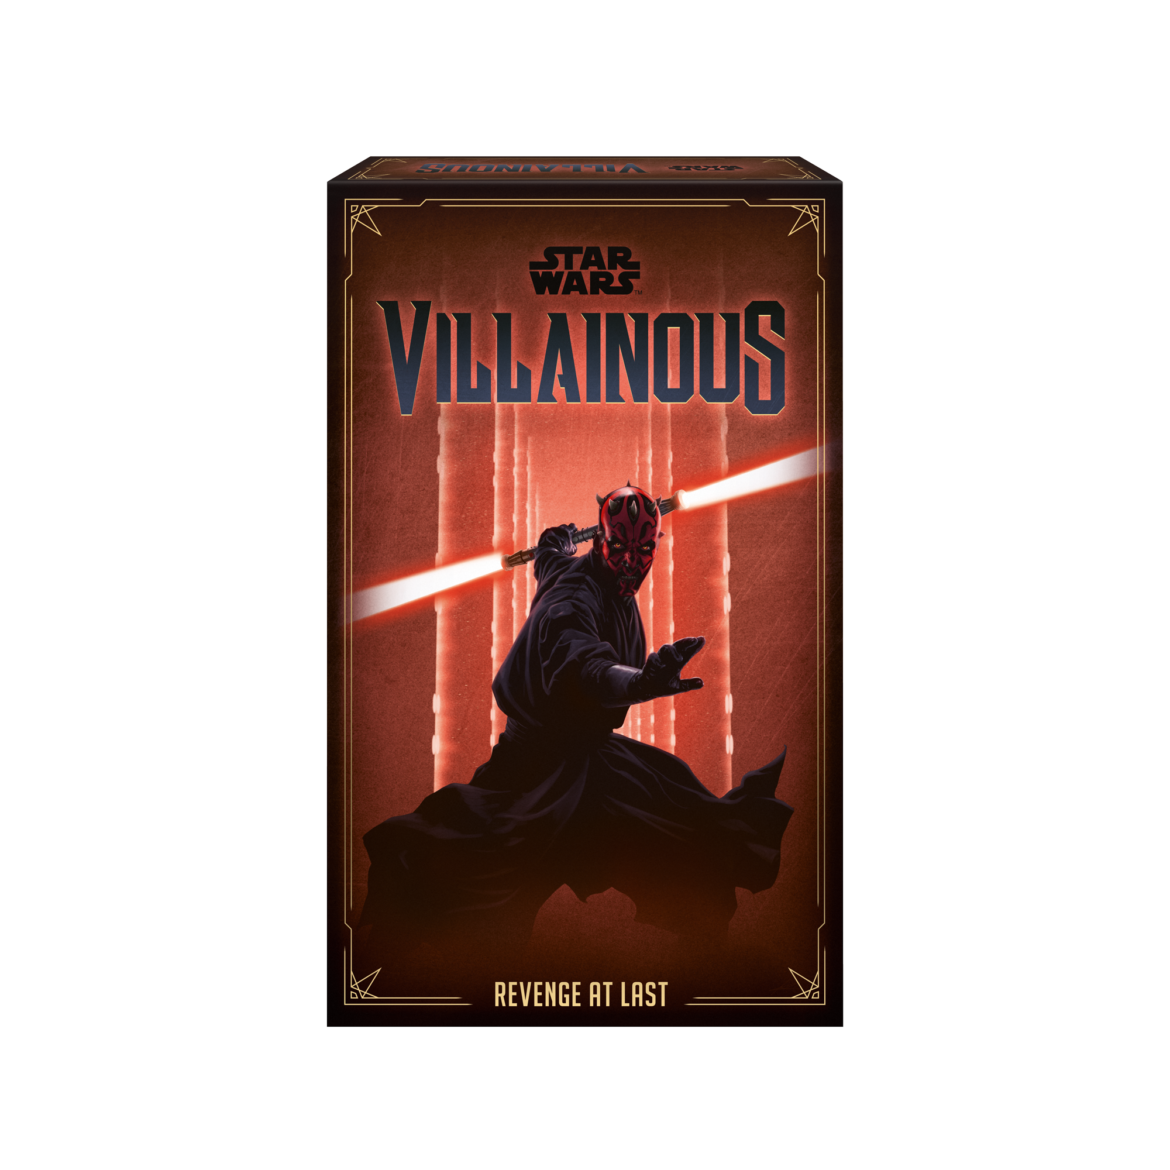 Star Wars Villainous Revenge at Last introduces fan-favorite Sith